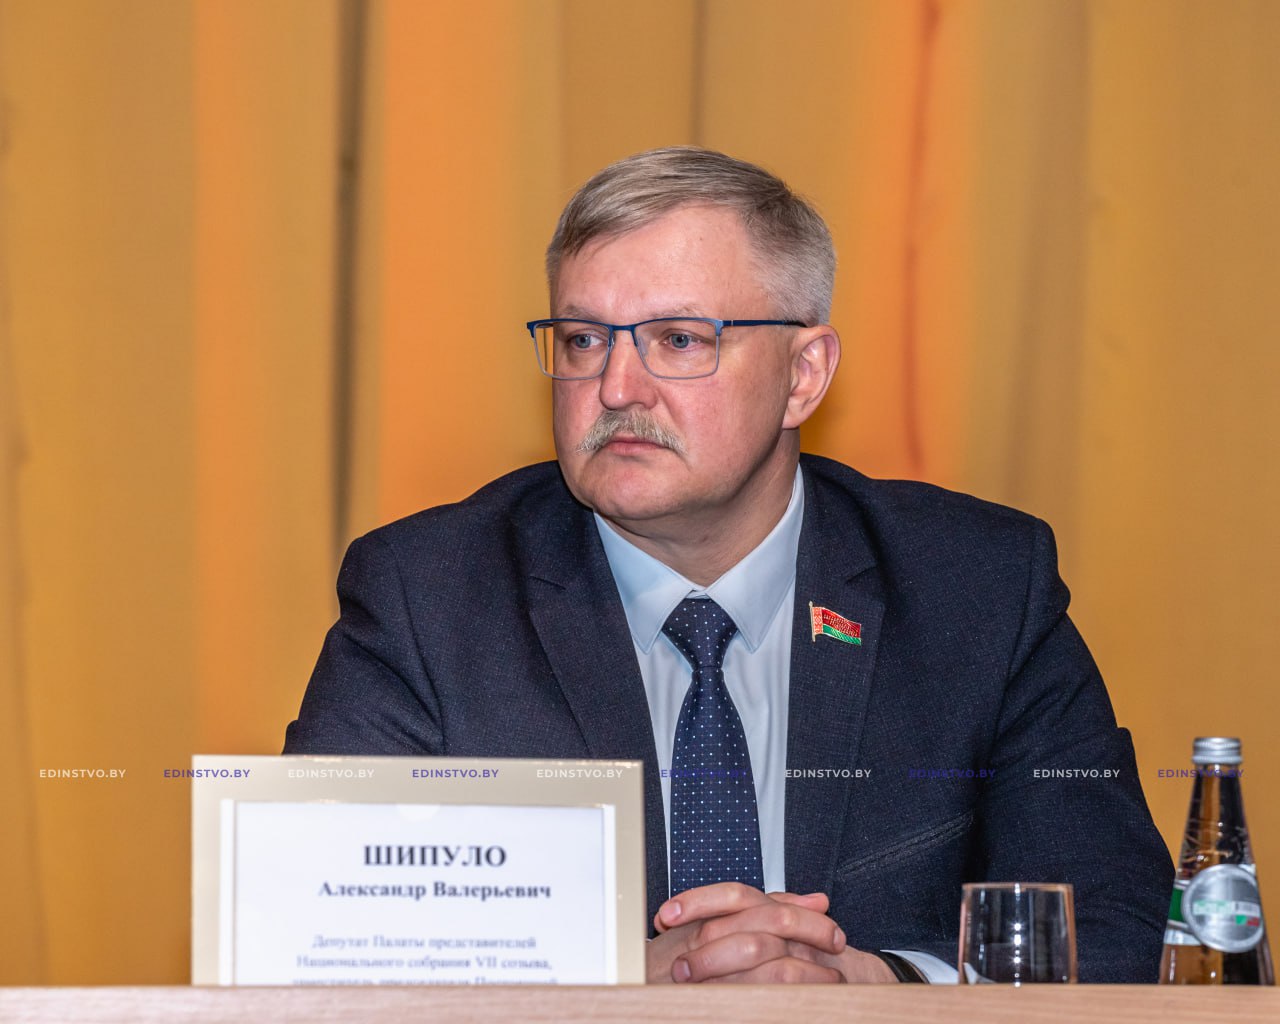 «Мы, белорусы, искренне хотим, чтобы братоубийственная война прекратилась» — парламентарий Шипуло об интервью Президента